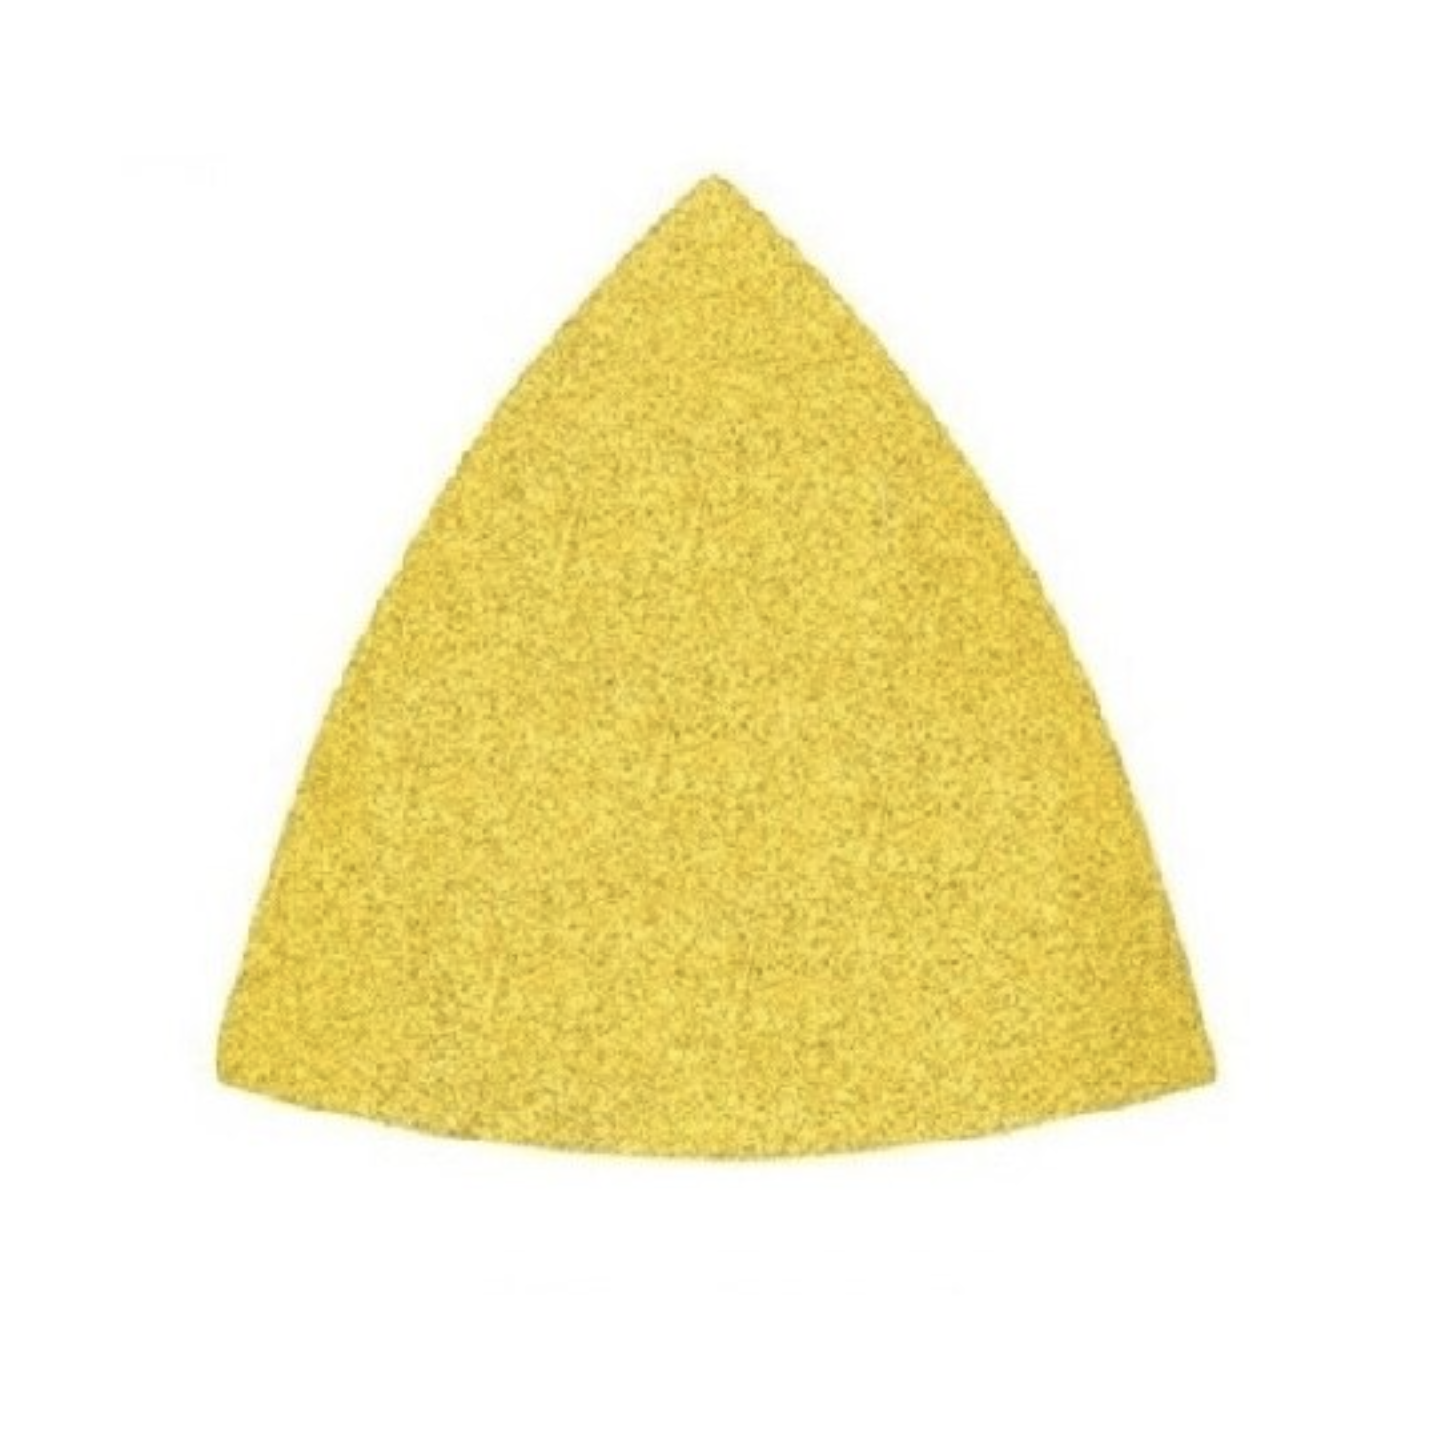 Triunghiuri abrazive - Triunghi abraziv Velcro CA331V 79 0G P150, oldindustry.ro